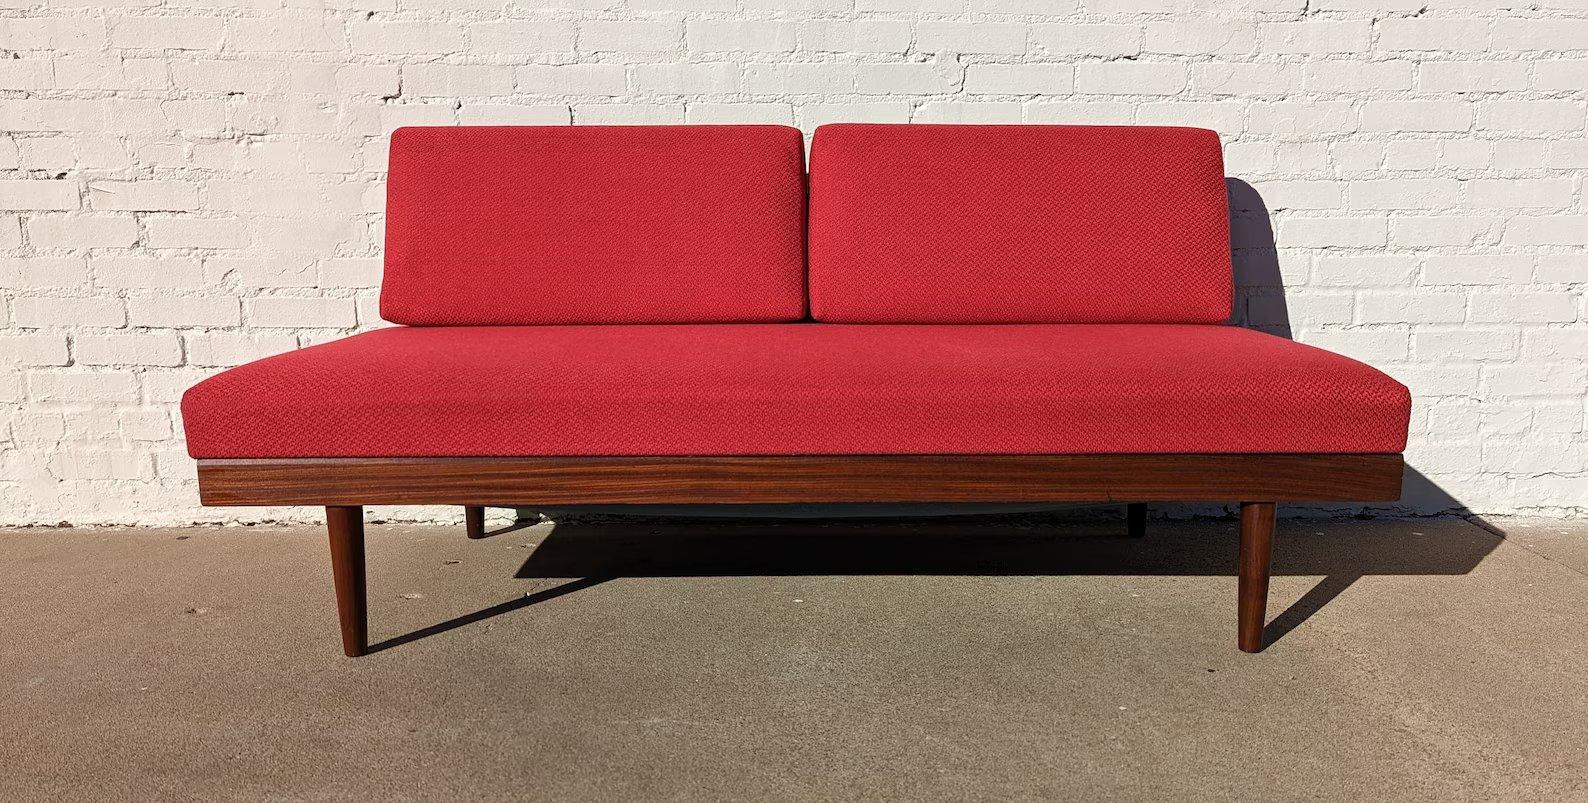 Canapé-lit scandinave rouge du milieu du siècle dernier

État vintage supérieur à la moyenne et structurellement sain. Le cadre en teck présente une légère usure de la finition et des rayures. La tapisserie est neuve. Le cadre en teck présente